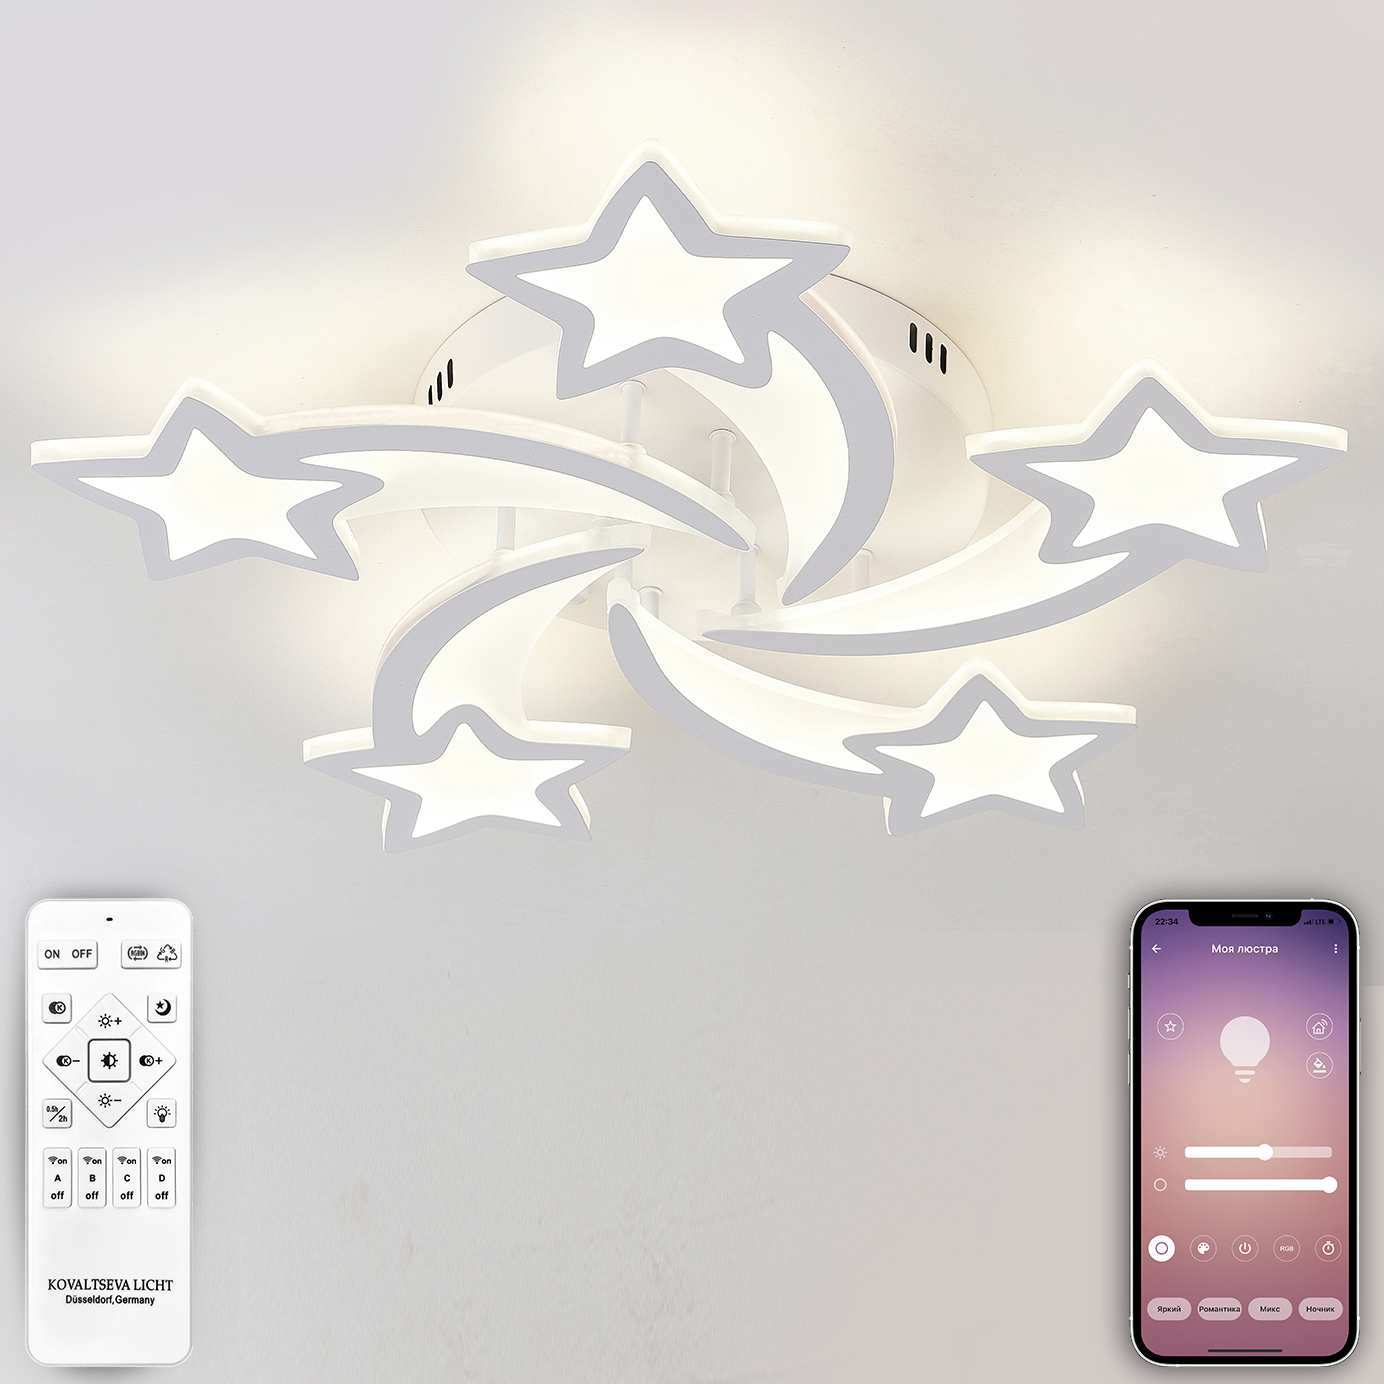 Светодиодный светильник NATALI KOVALTSEVA люстра 120W белый LED - фото 1